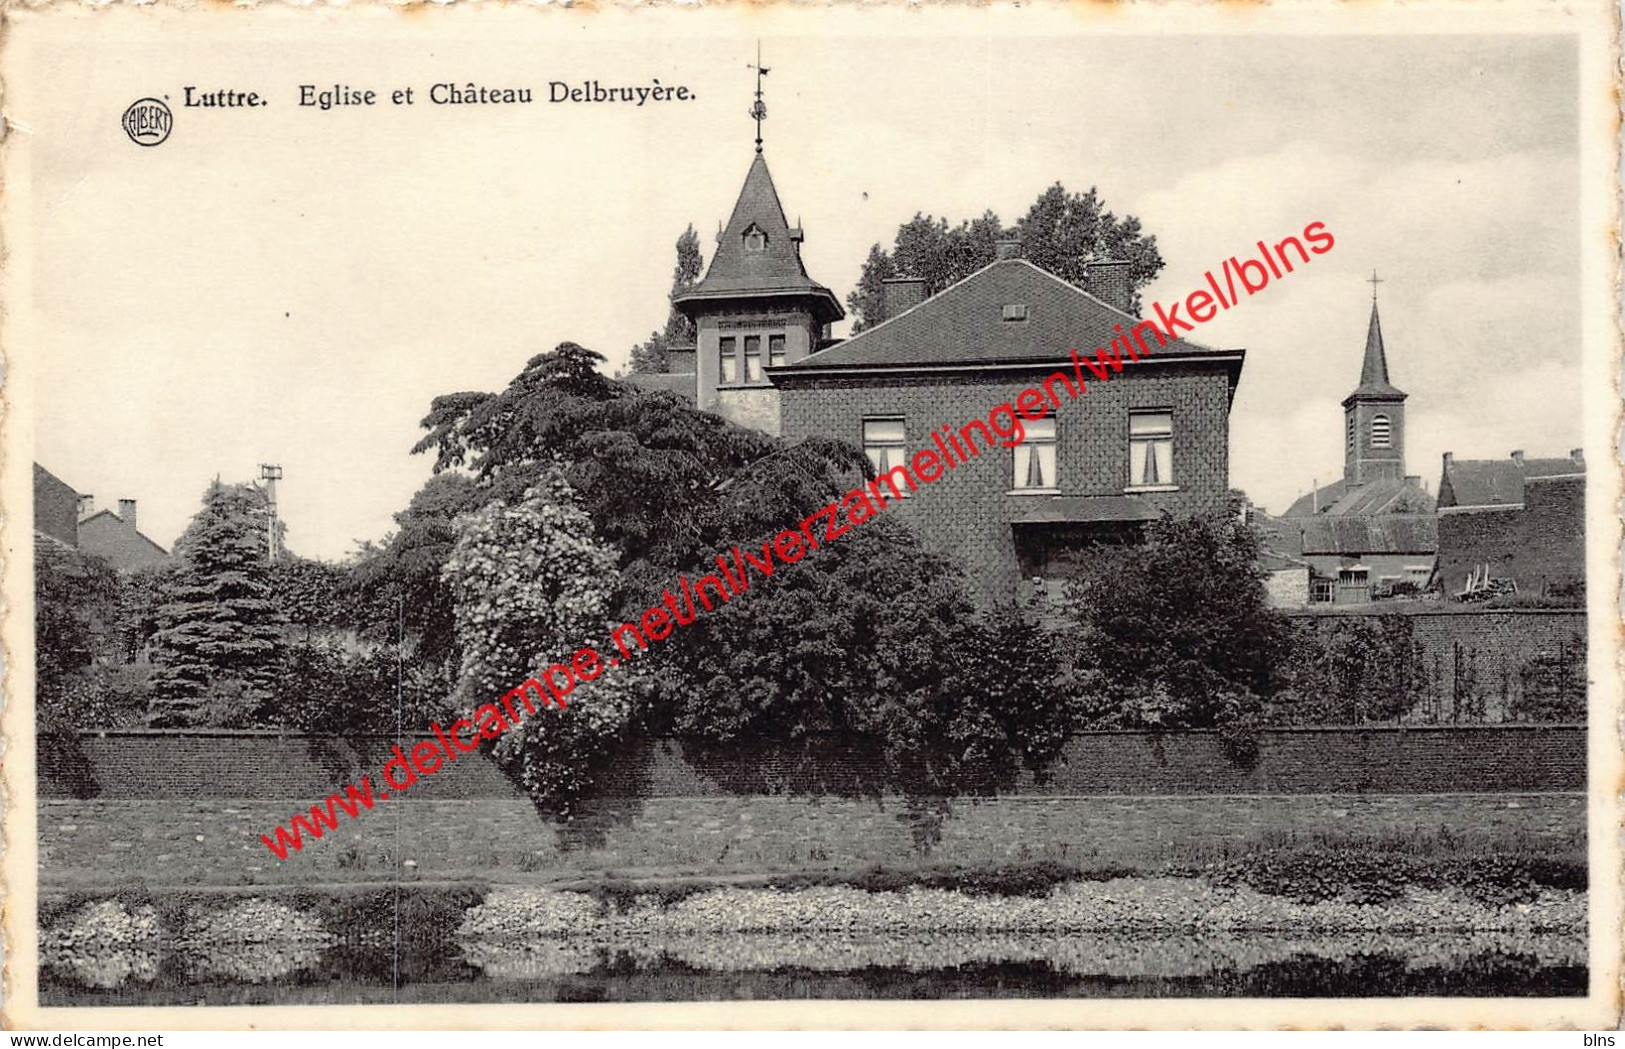 Eglise Et Château Delbruyère - Luttre - Pont-a-Celles